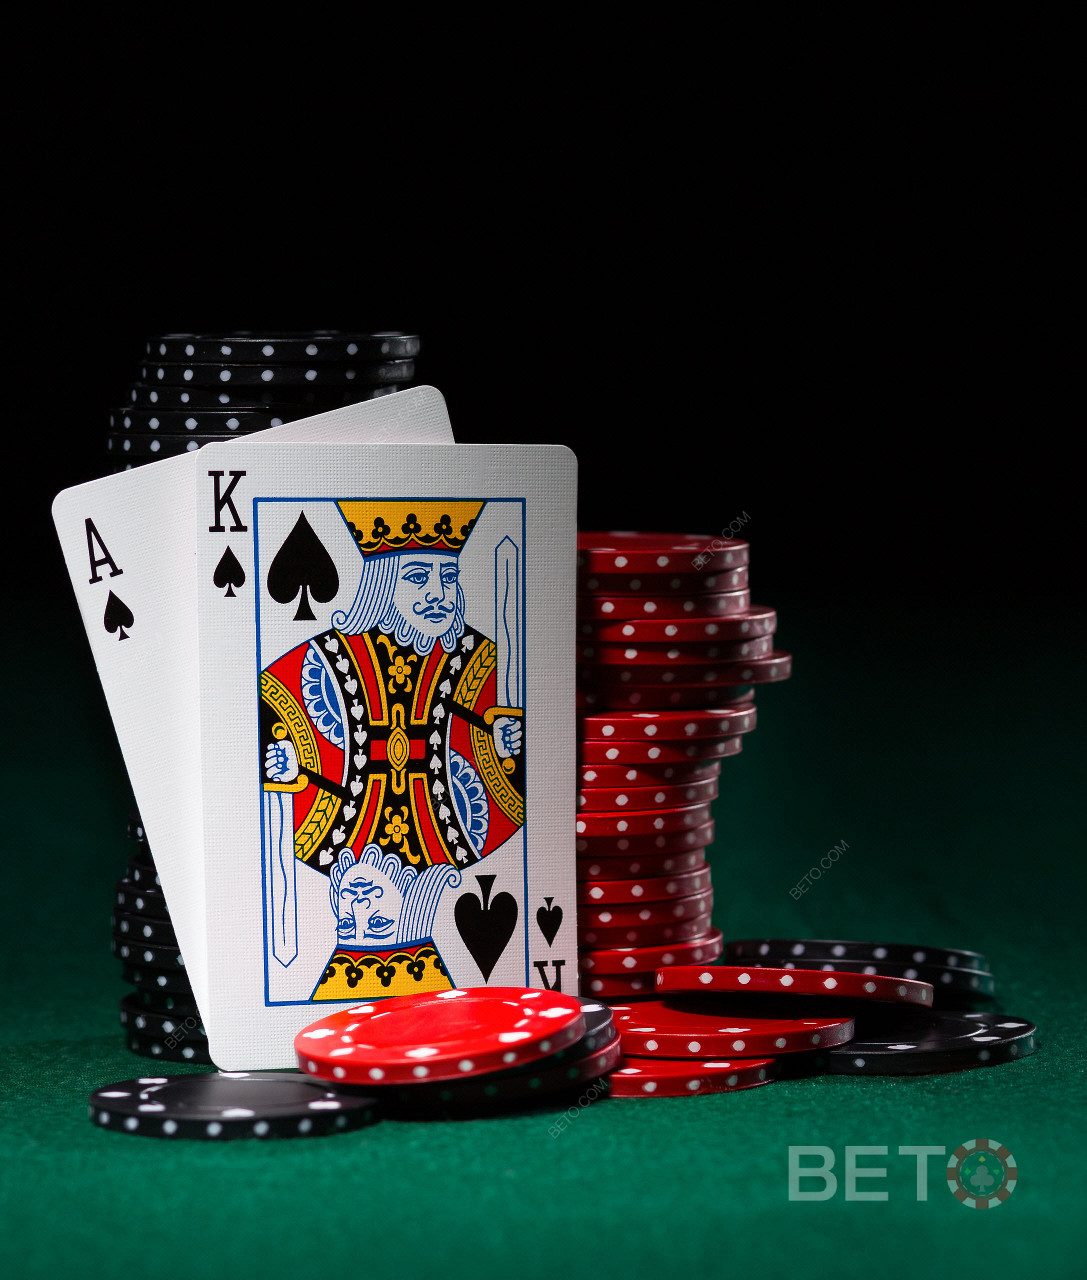 Video poker oyunları ve kart oyunları da BitStarz adresinde mevcuttur.